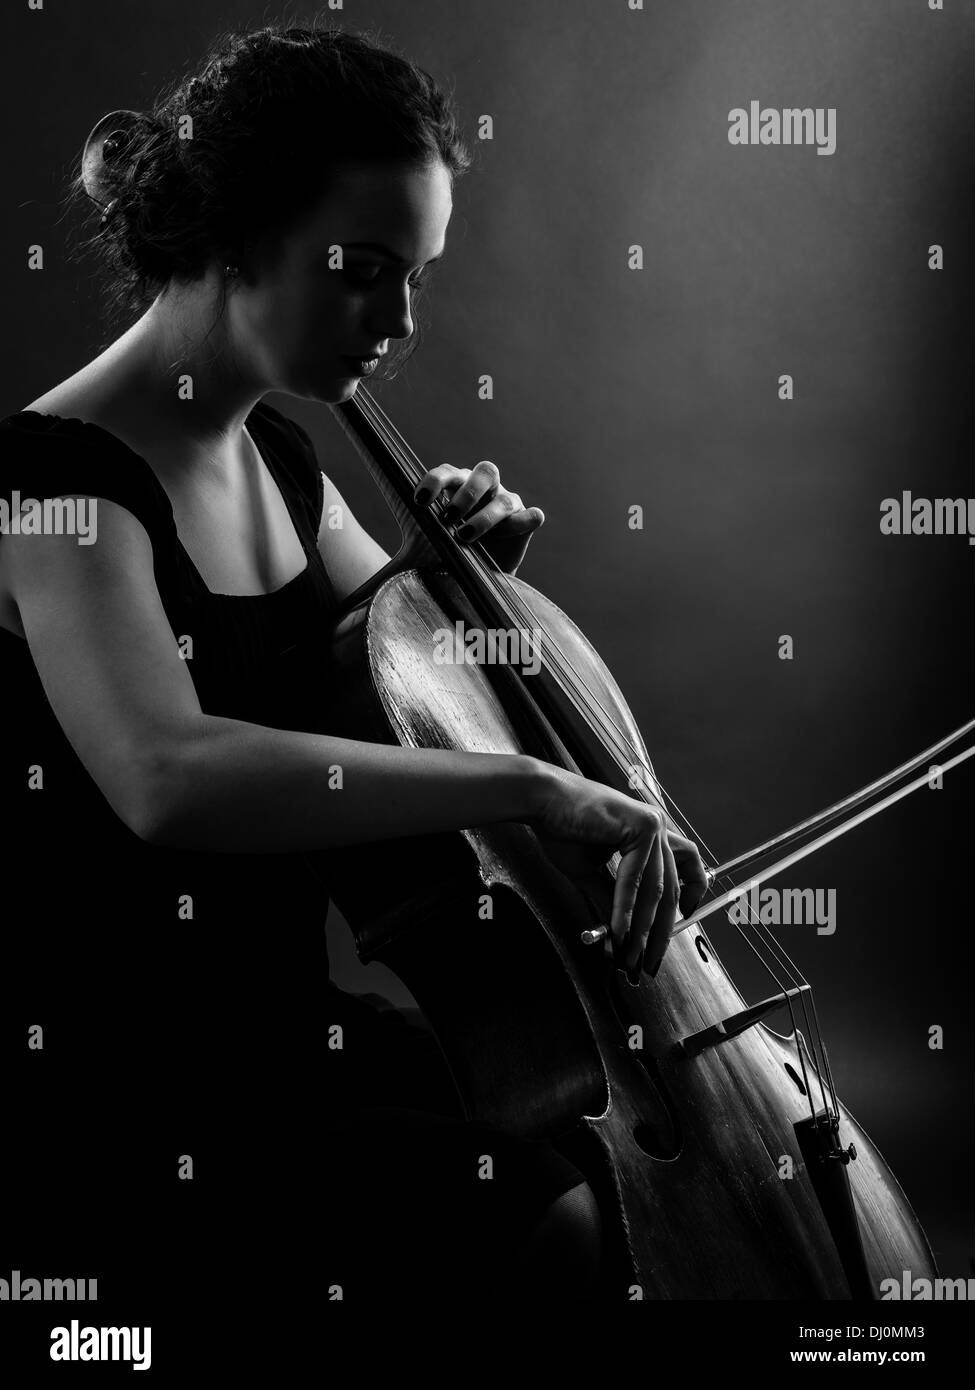 Foto von einem schönen weiblichen Musiker spielt ein Cello. Hinterleuchteten Schwarz-Weiß Bild. Stockfoto